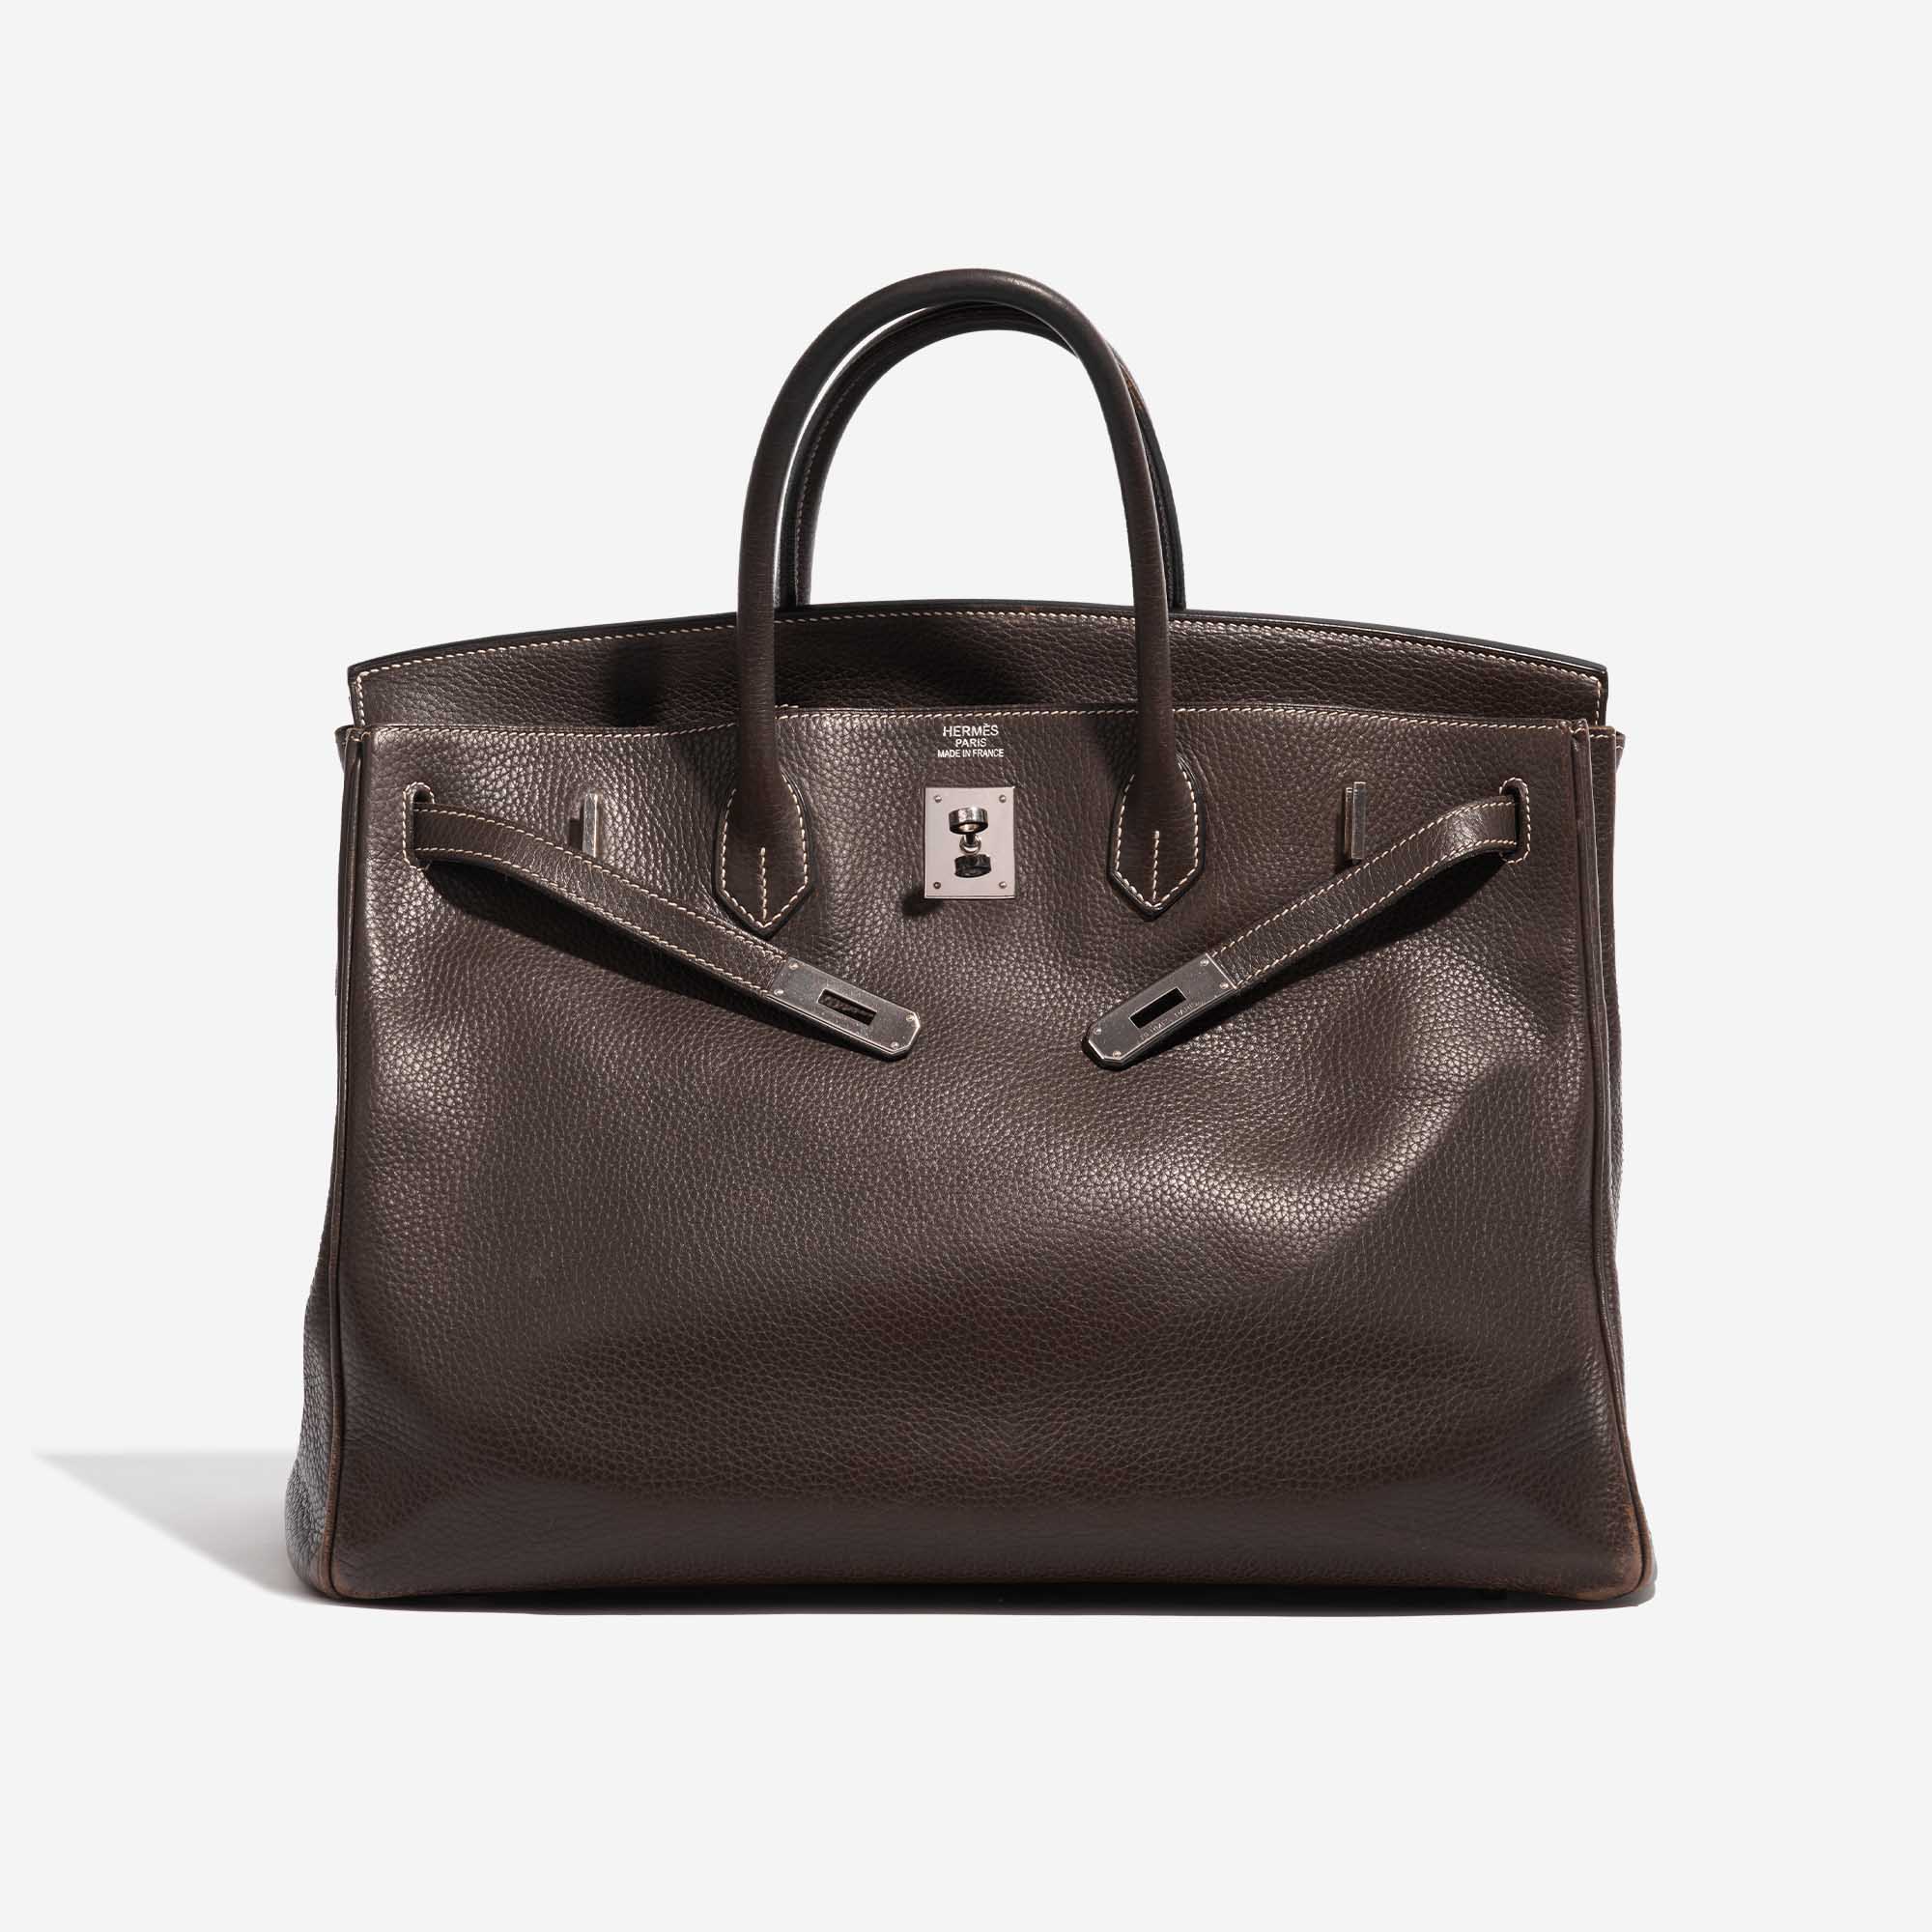 Pre-owned Hermès bag Birkin 40 Clemence Café Brown Front Open | Sell your designer bag on Saclab.com